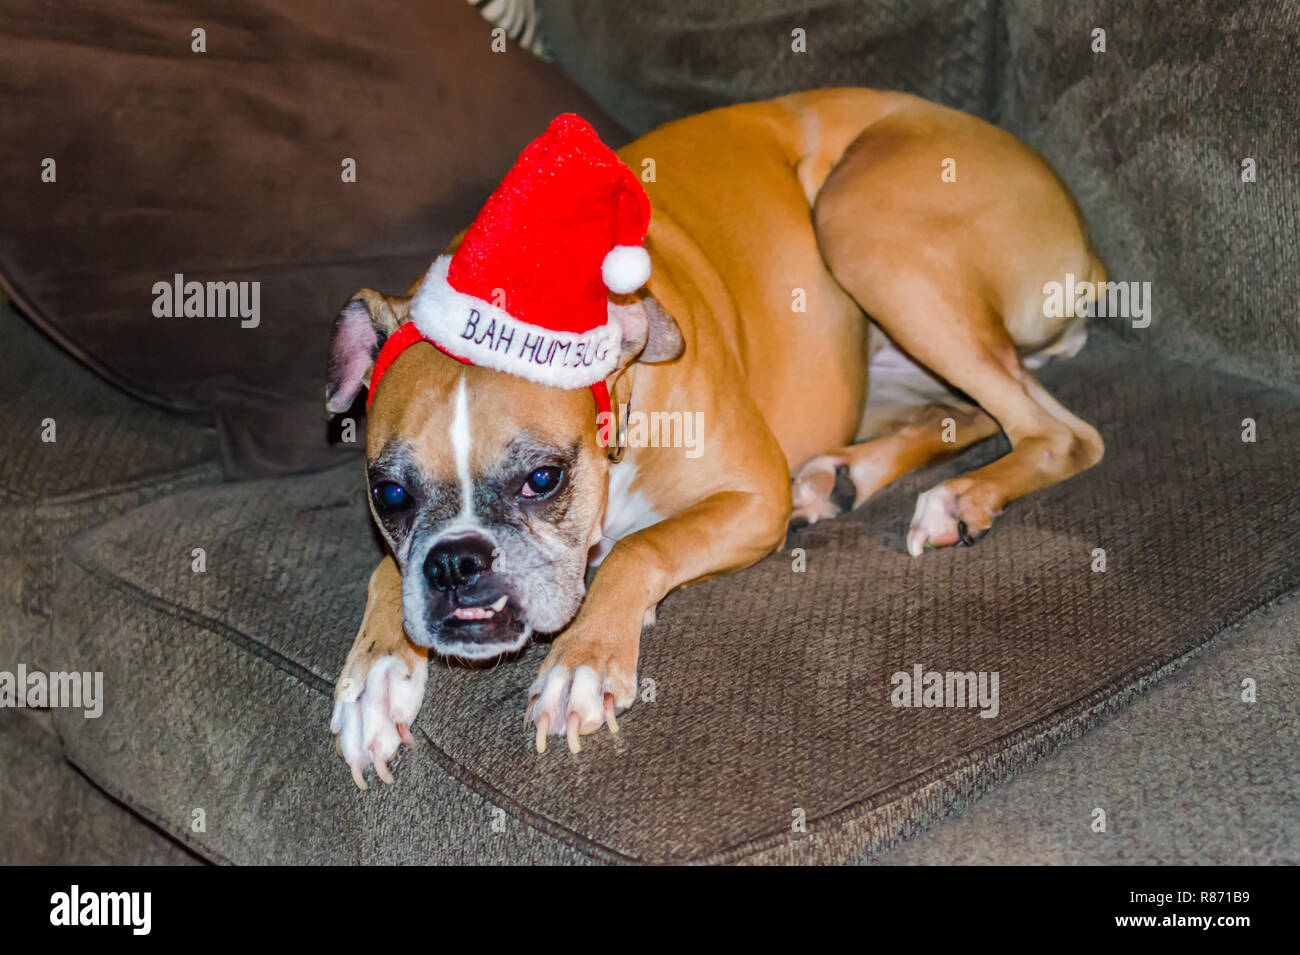 Noël drôle Dog wearing red Bah blague hat. Cute animal fête humour image pour célébrer la saison de vacances de Noël. Banque D'Images